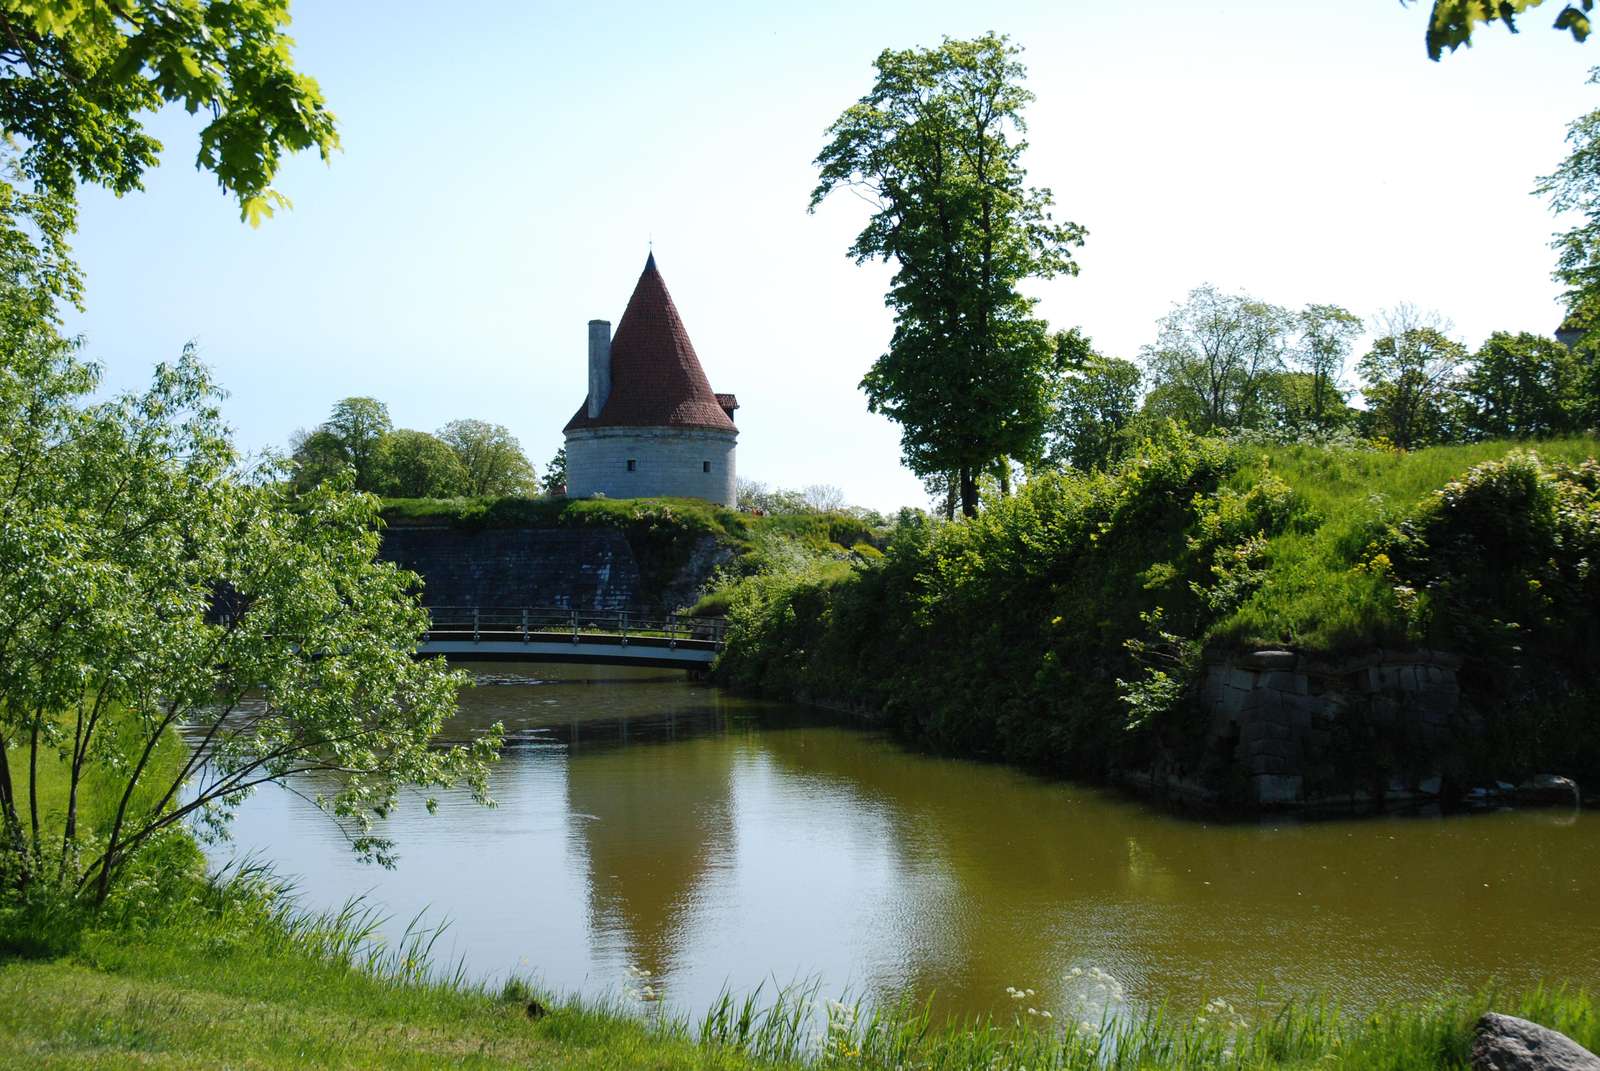 Kuressaare castle on Saaremaa, Estonia